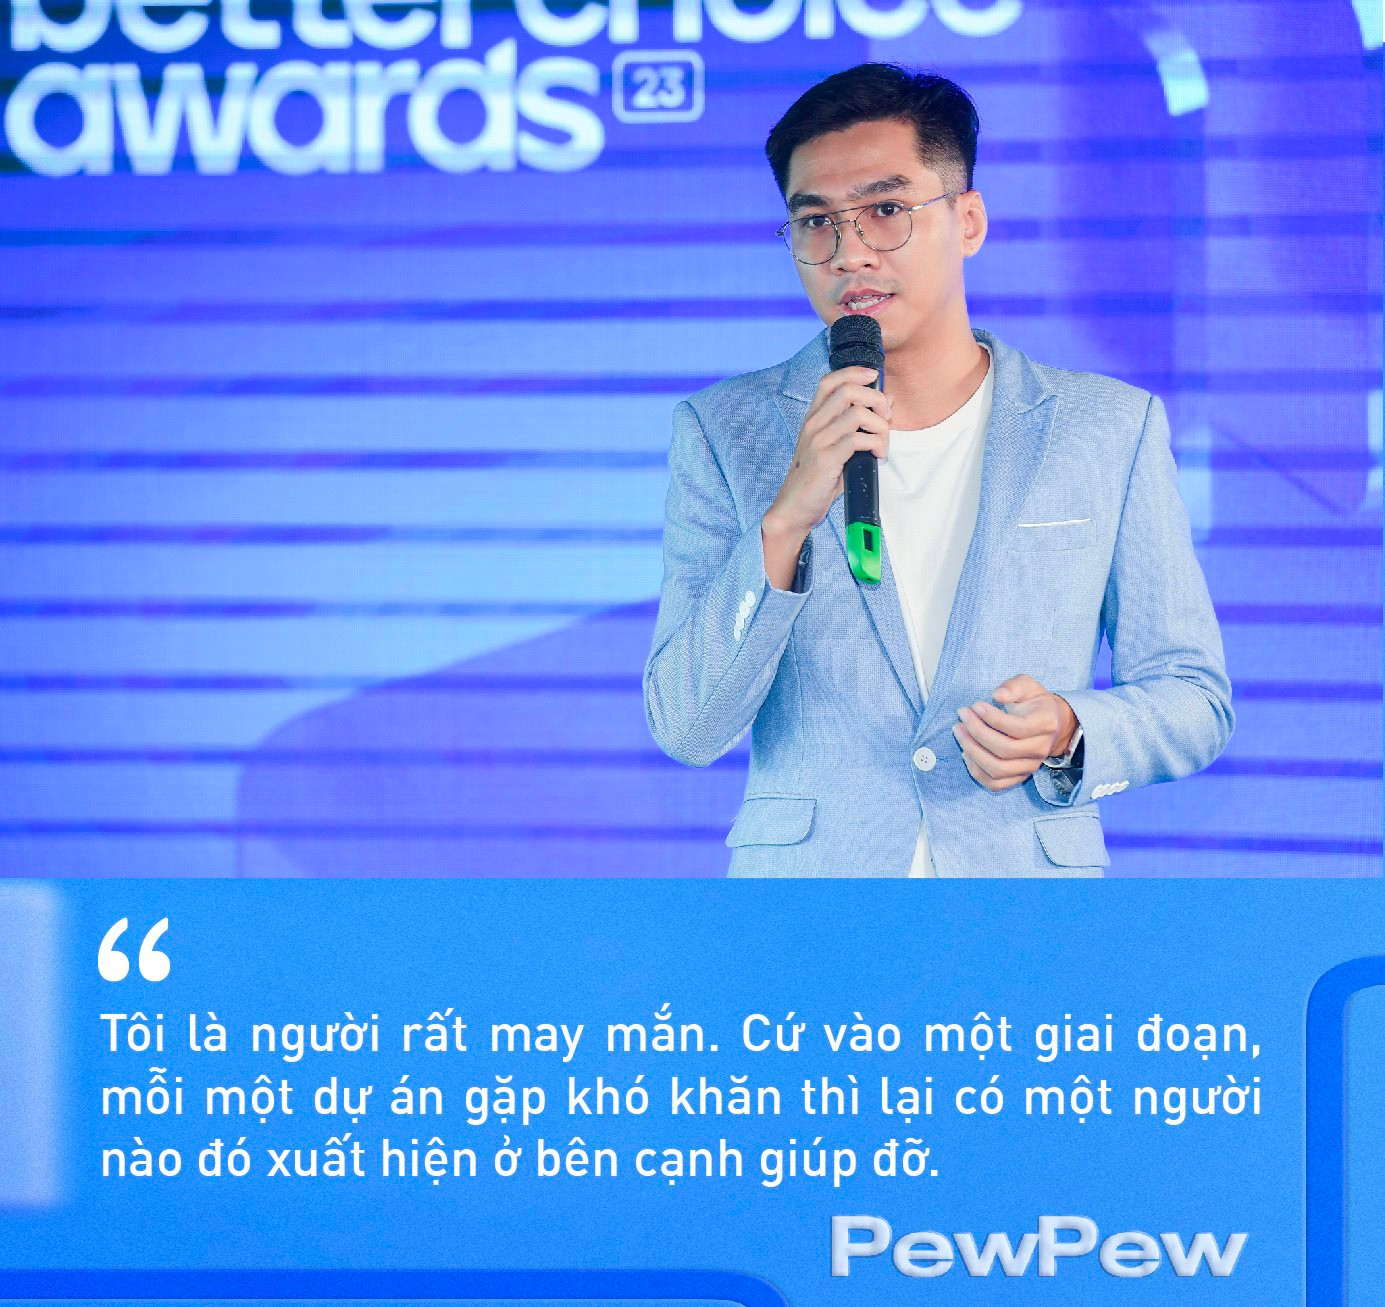 PewPew tiết lộ lý do khởi nghiệp siêu dị trên TikTok với giấy vệ sinh, livestream bằng kỷ vật tình yêu, và chuyện ‘chưa có nhãn hàng nào phải buồn’ - Ảnh 4.